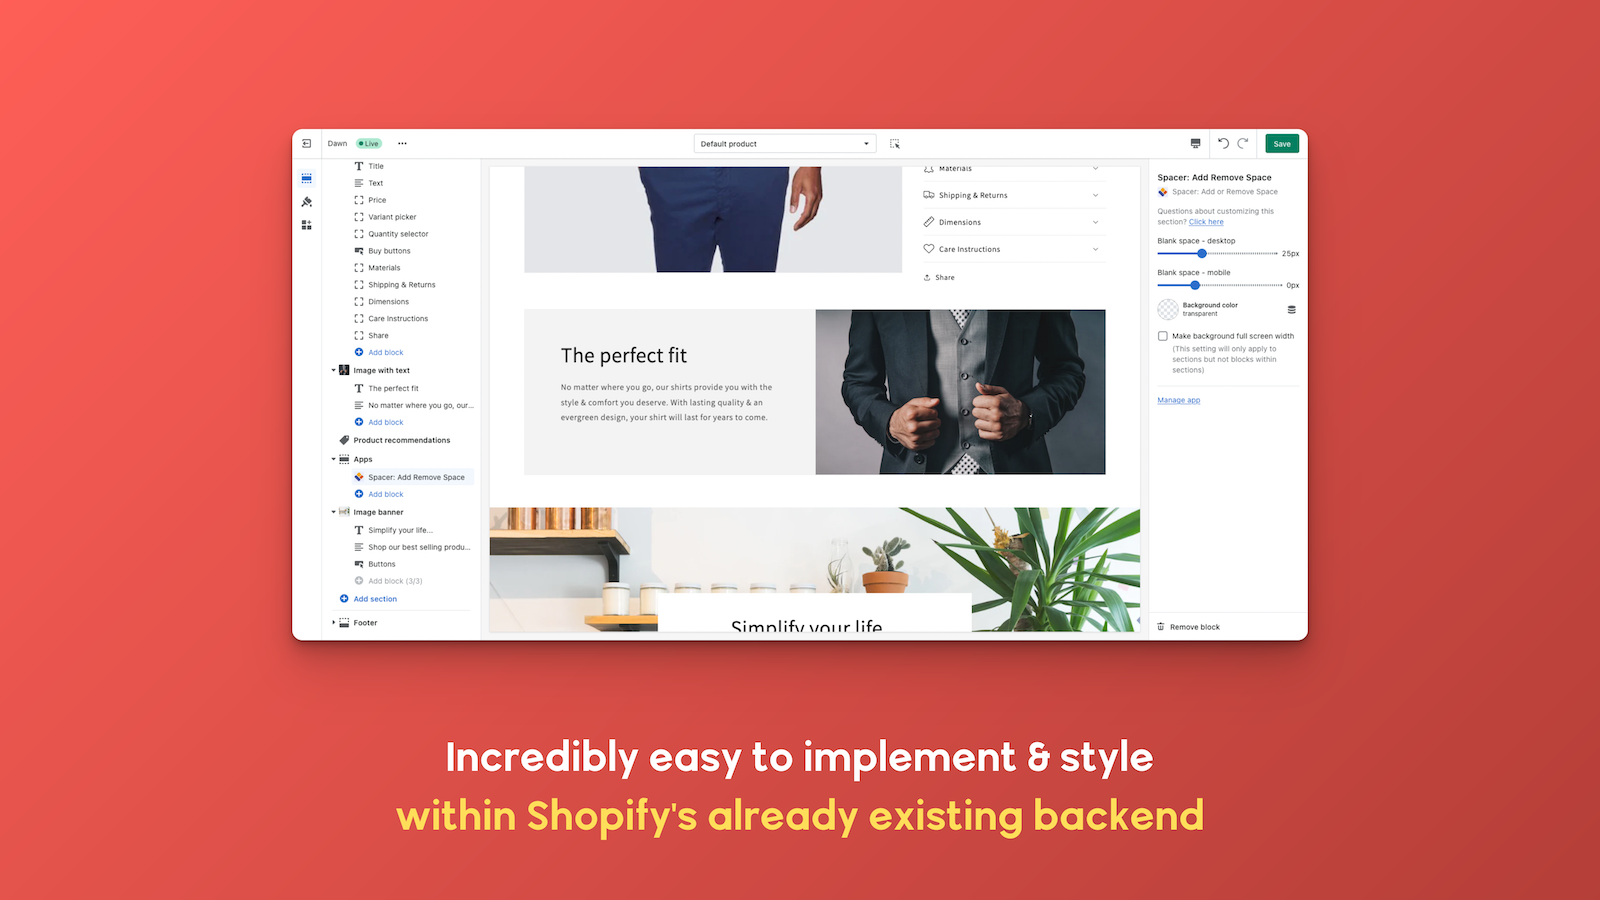 Otroligt enkelt att implementera och stil inom Shopify's backend